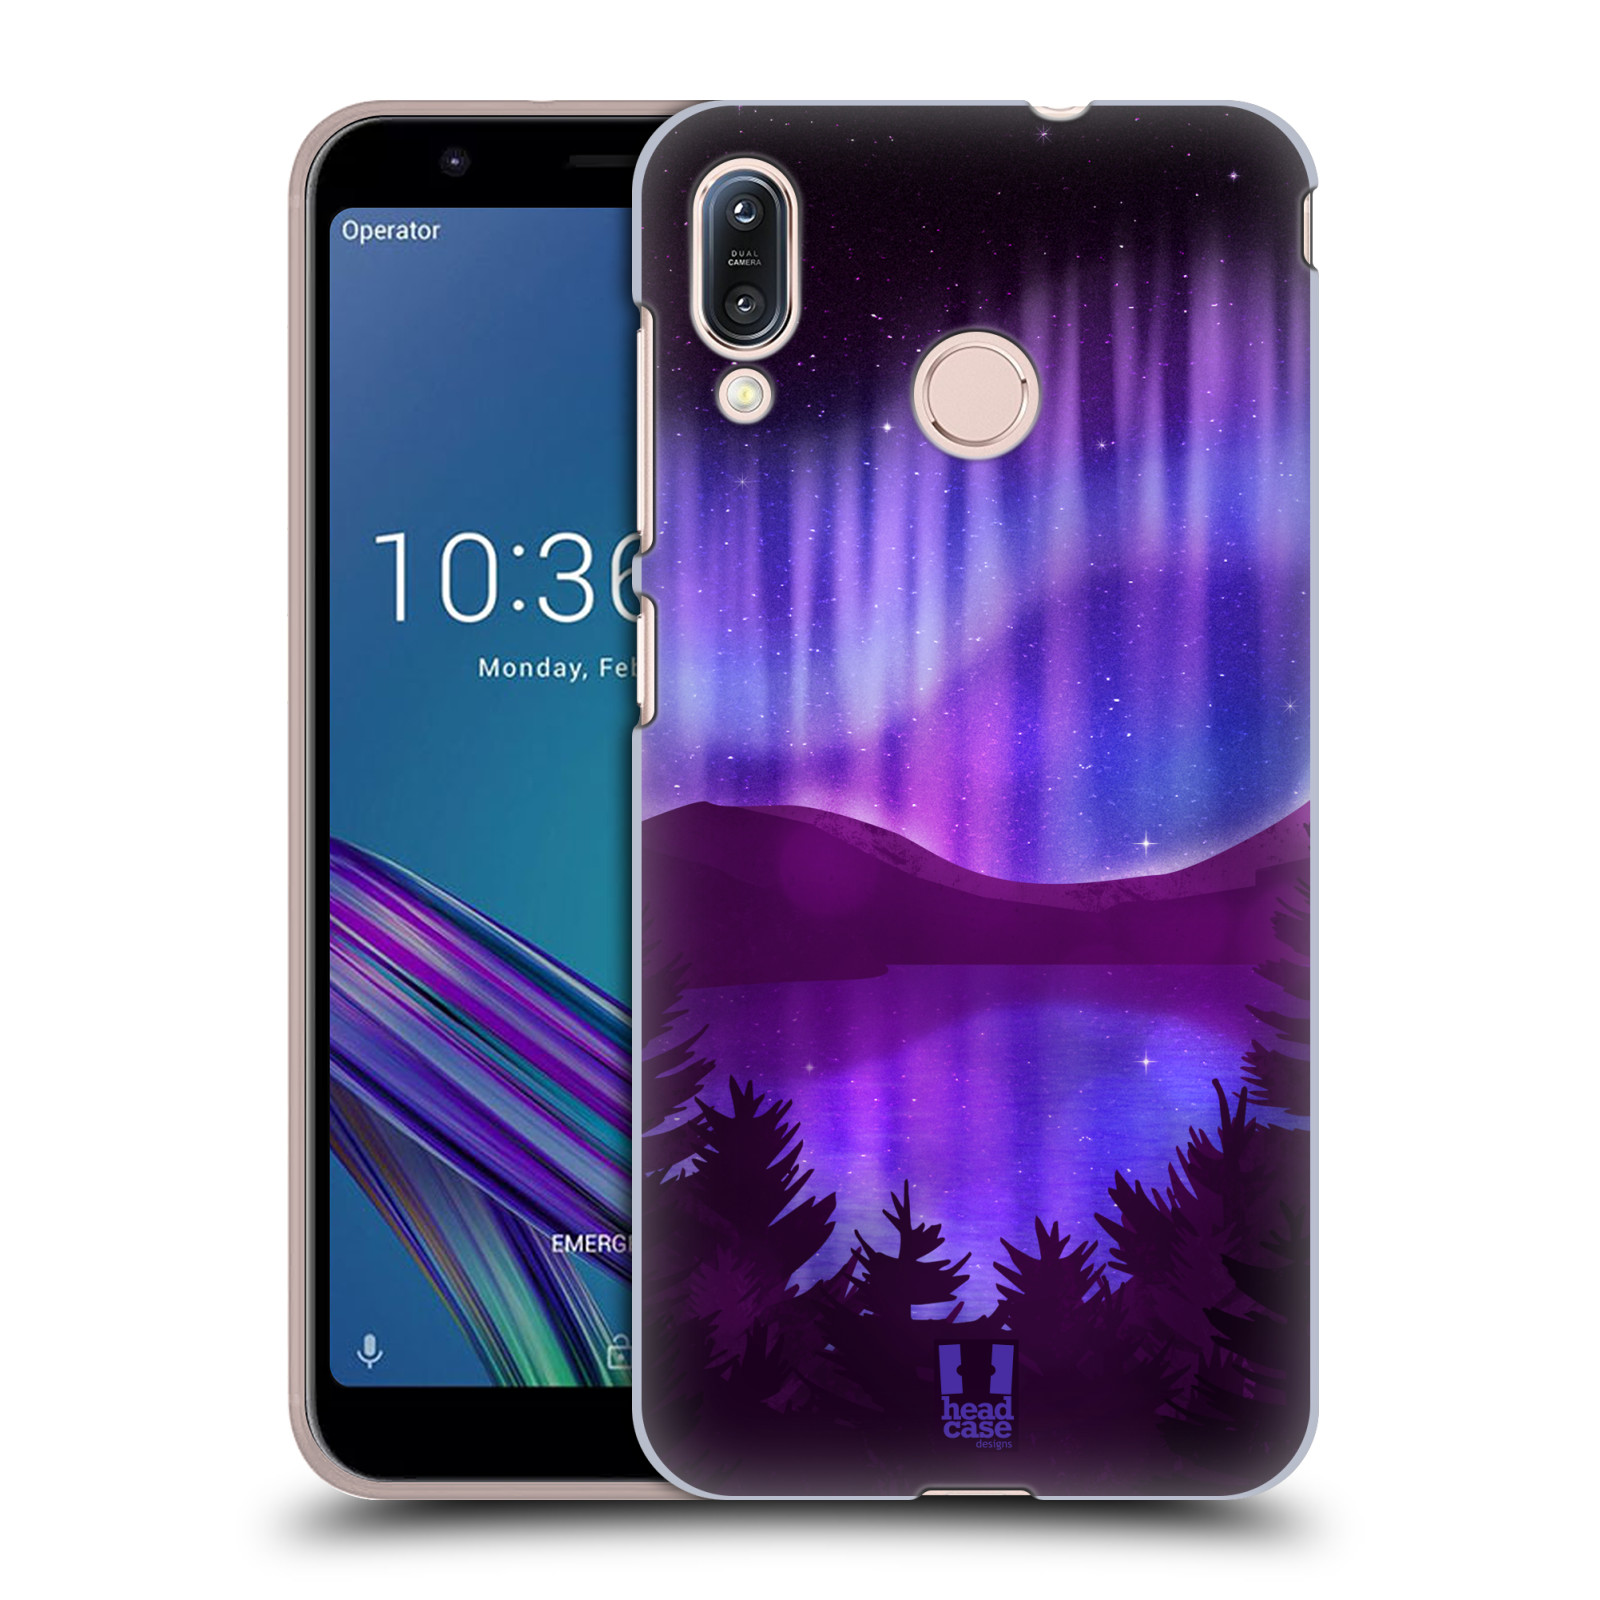 Zadní obal pro mobil Asus Zenfone Max (M1) ZB555KL - HEAD CASE - Polární záře jezero, hory, les